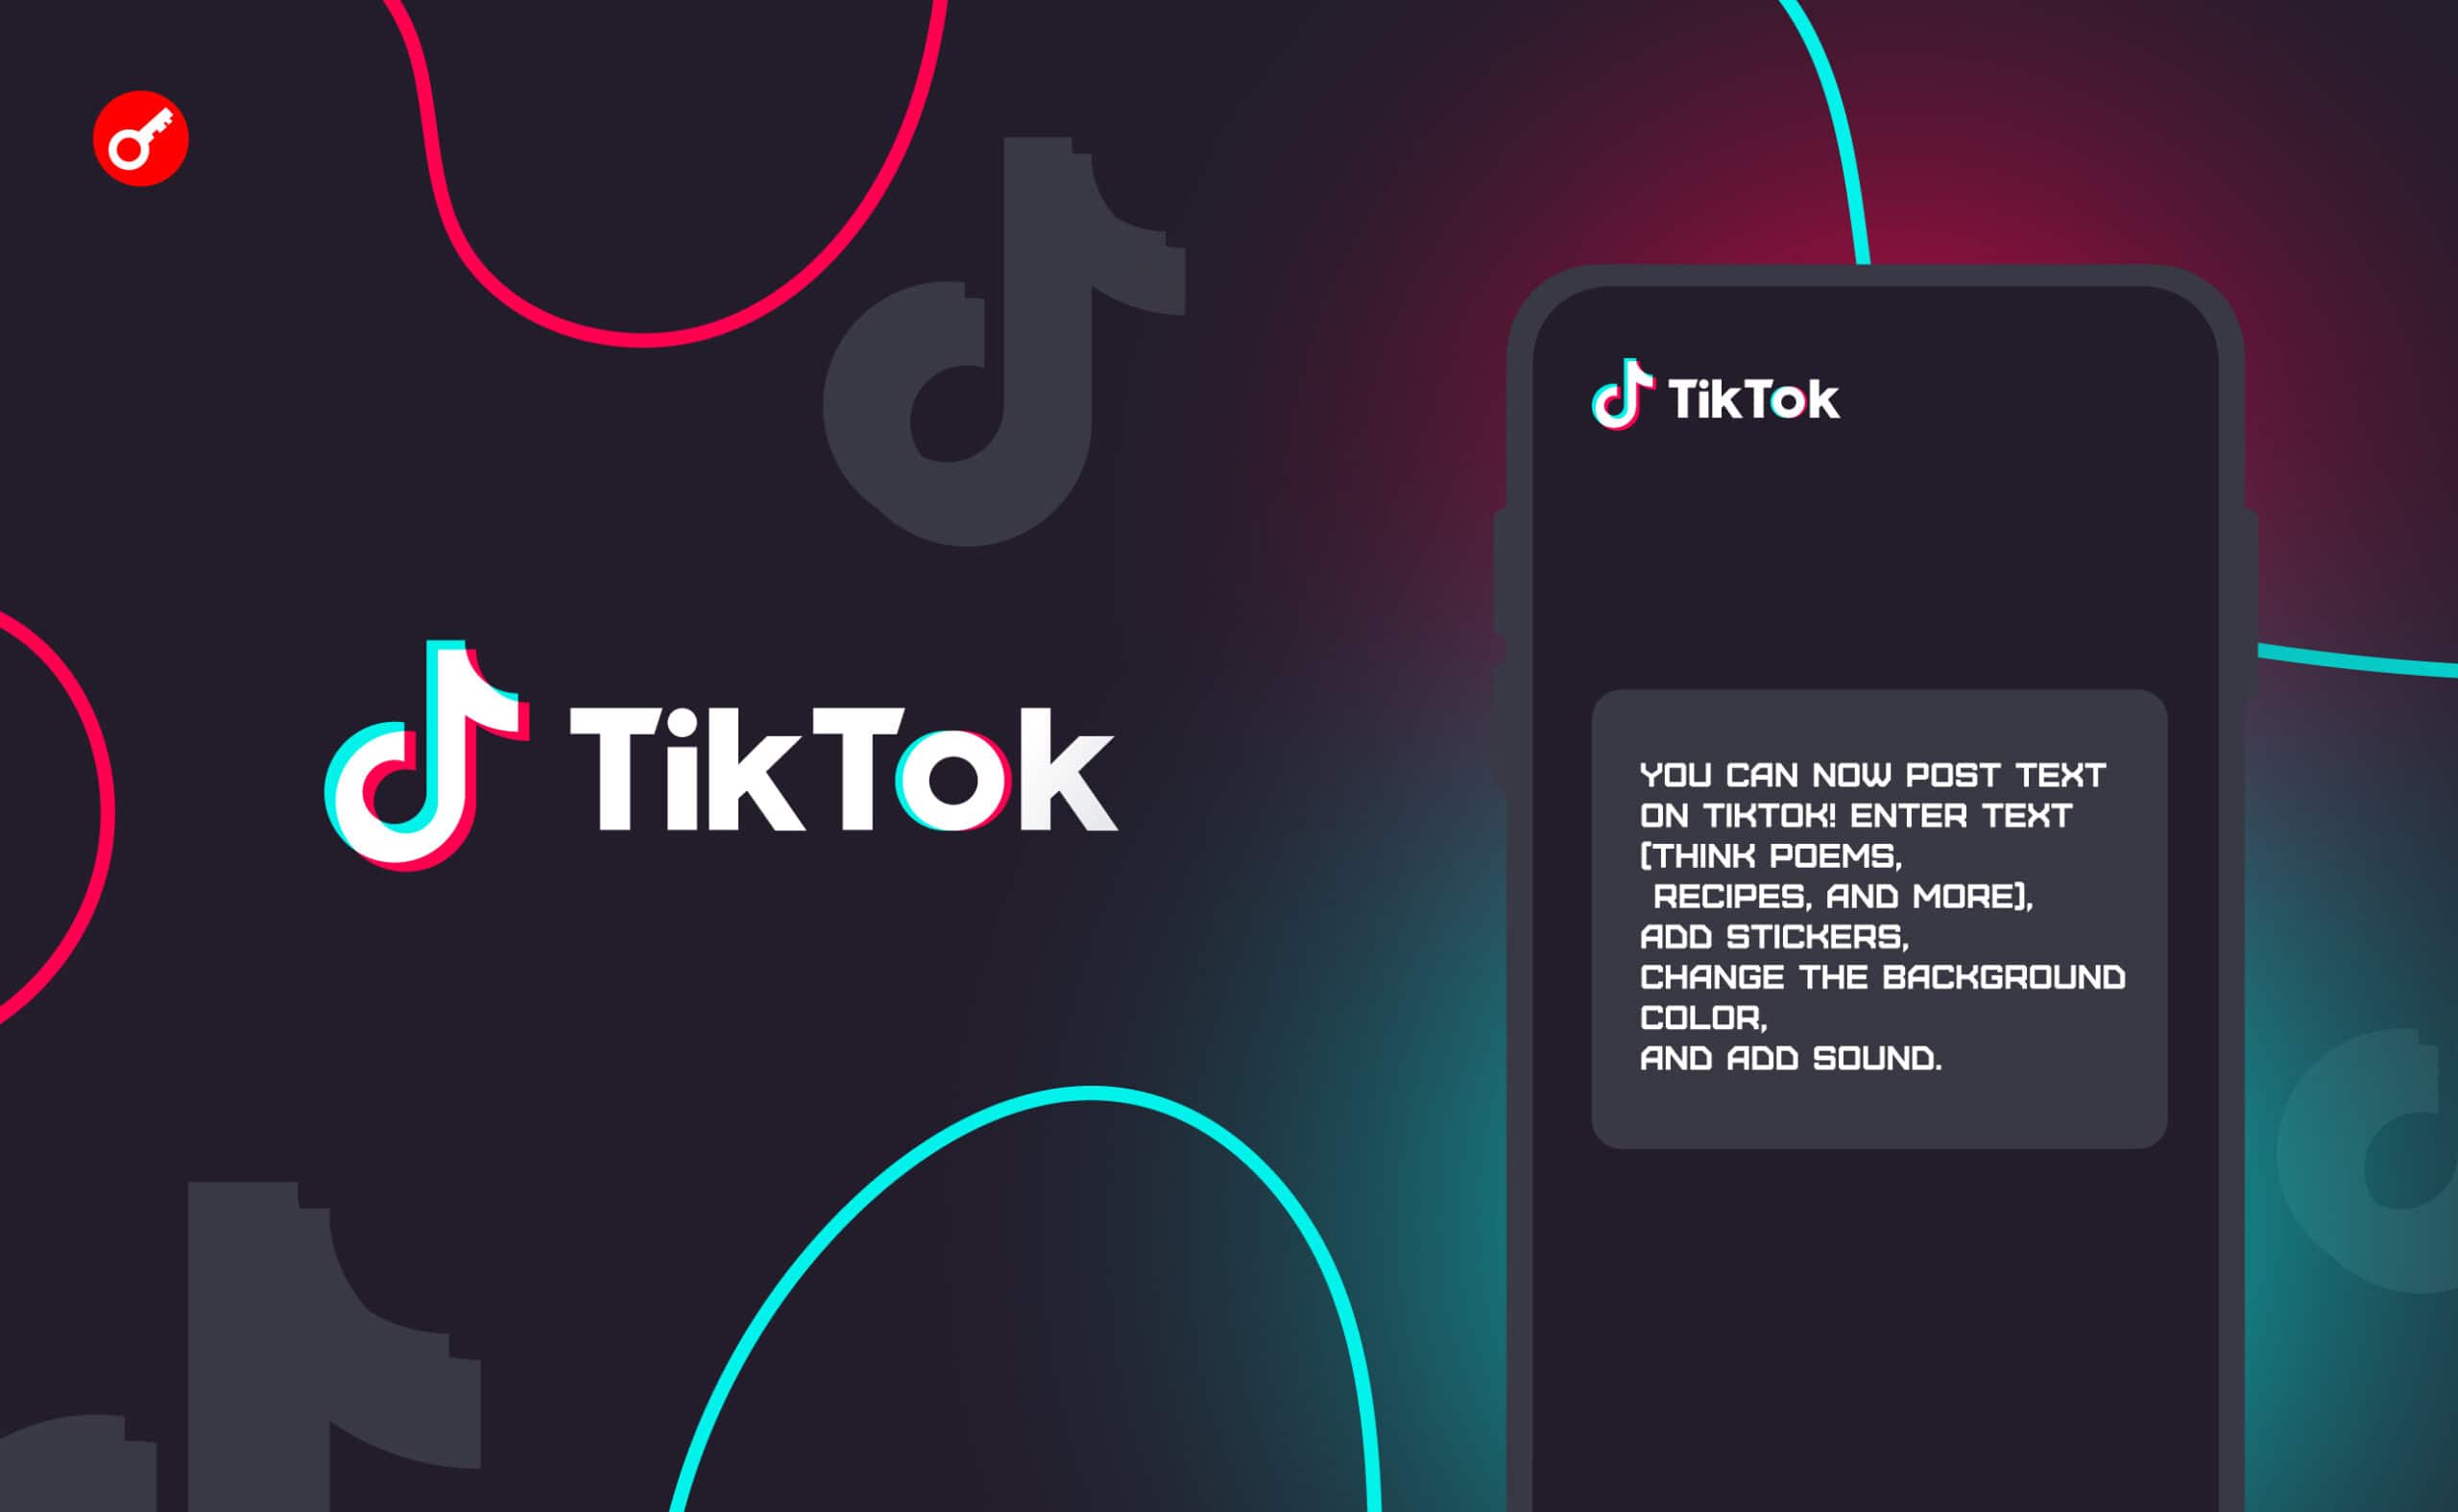 TikTok добавил функцию постинга текстовых сообщений. Заглавный коллаж новости.